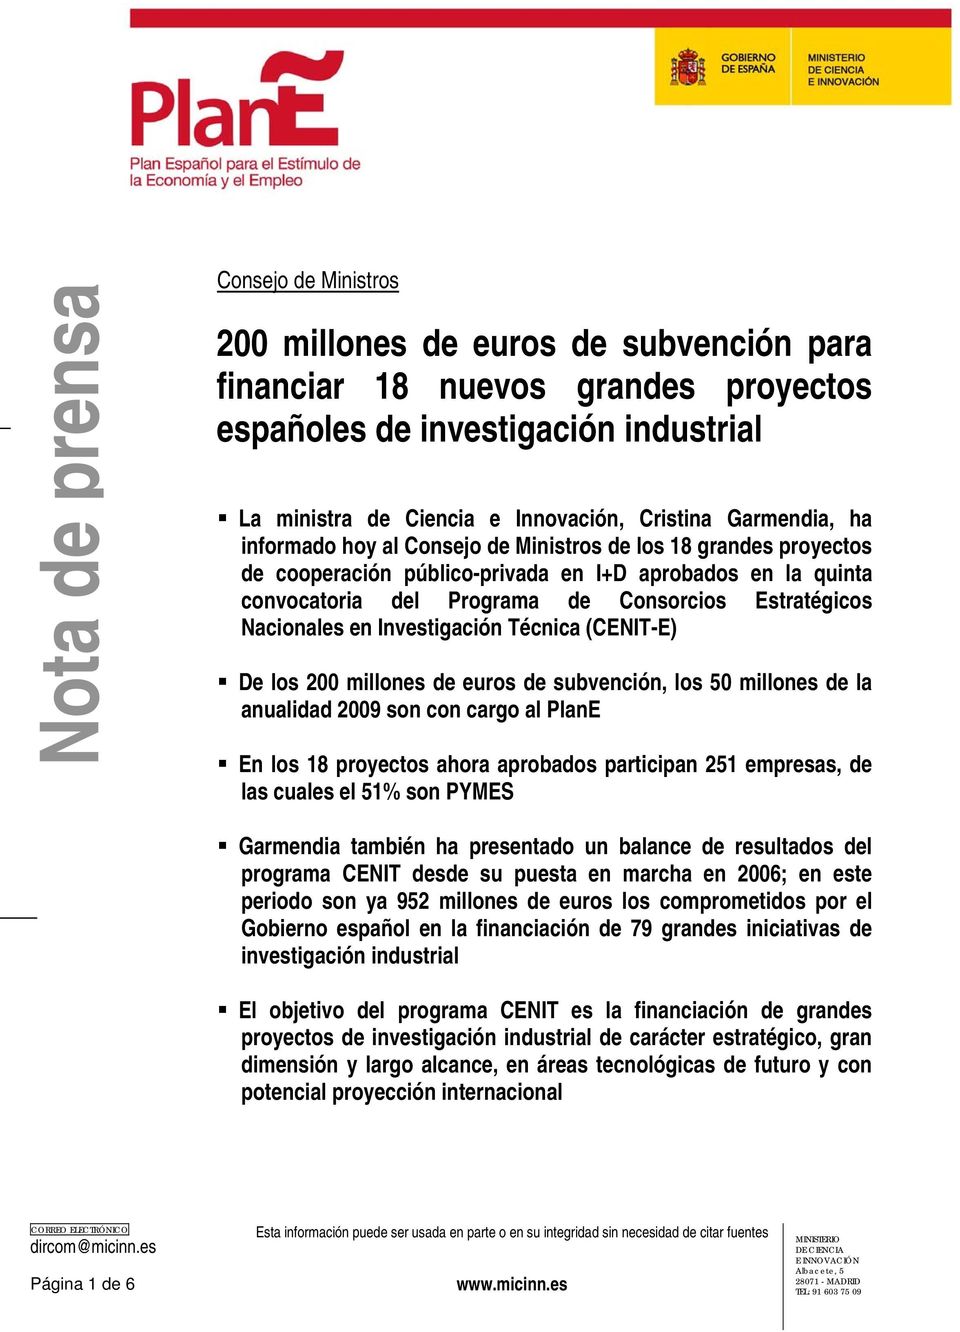 Nacionales en Investigación Técnica (CENIT-E) De los 200 millones de euros de subvención, los 50 millones de la anualidad 2009 son con cargo al PlanE En los 18 proyectos ahora aprobados participan